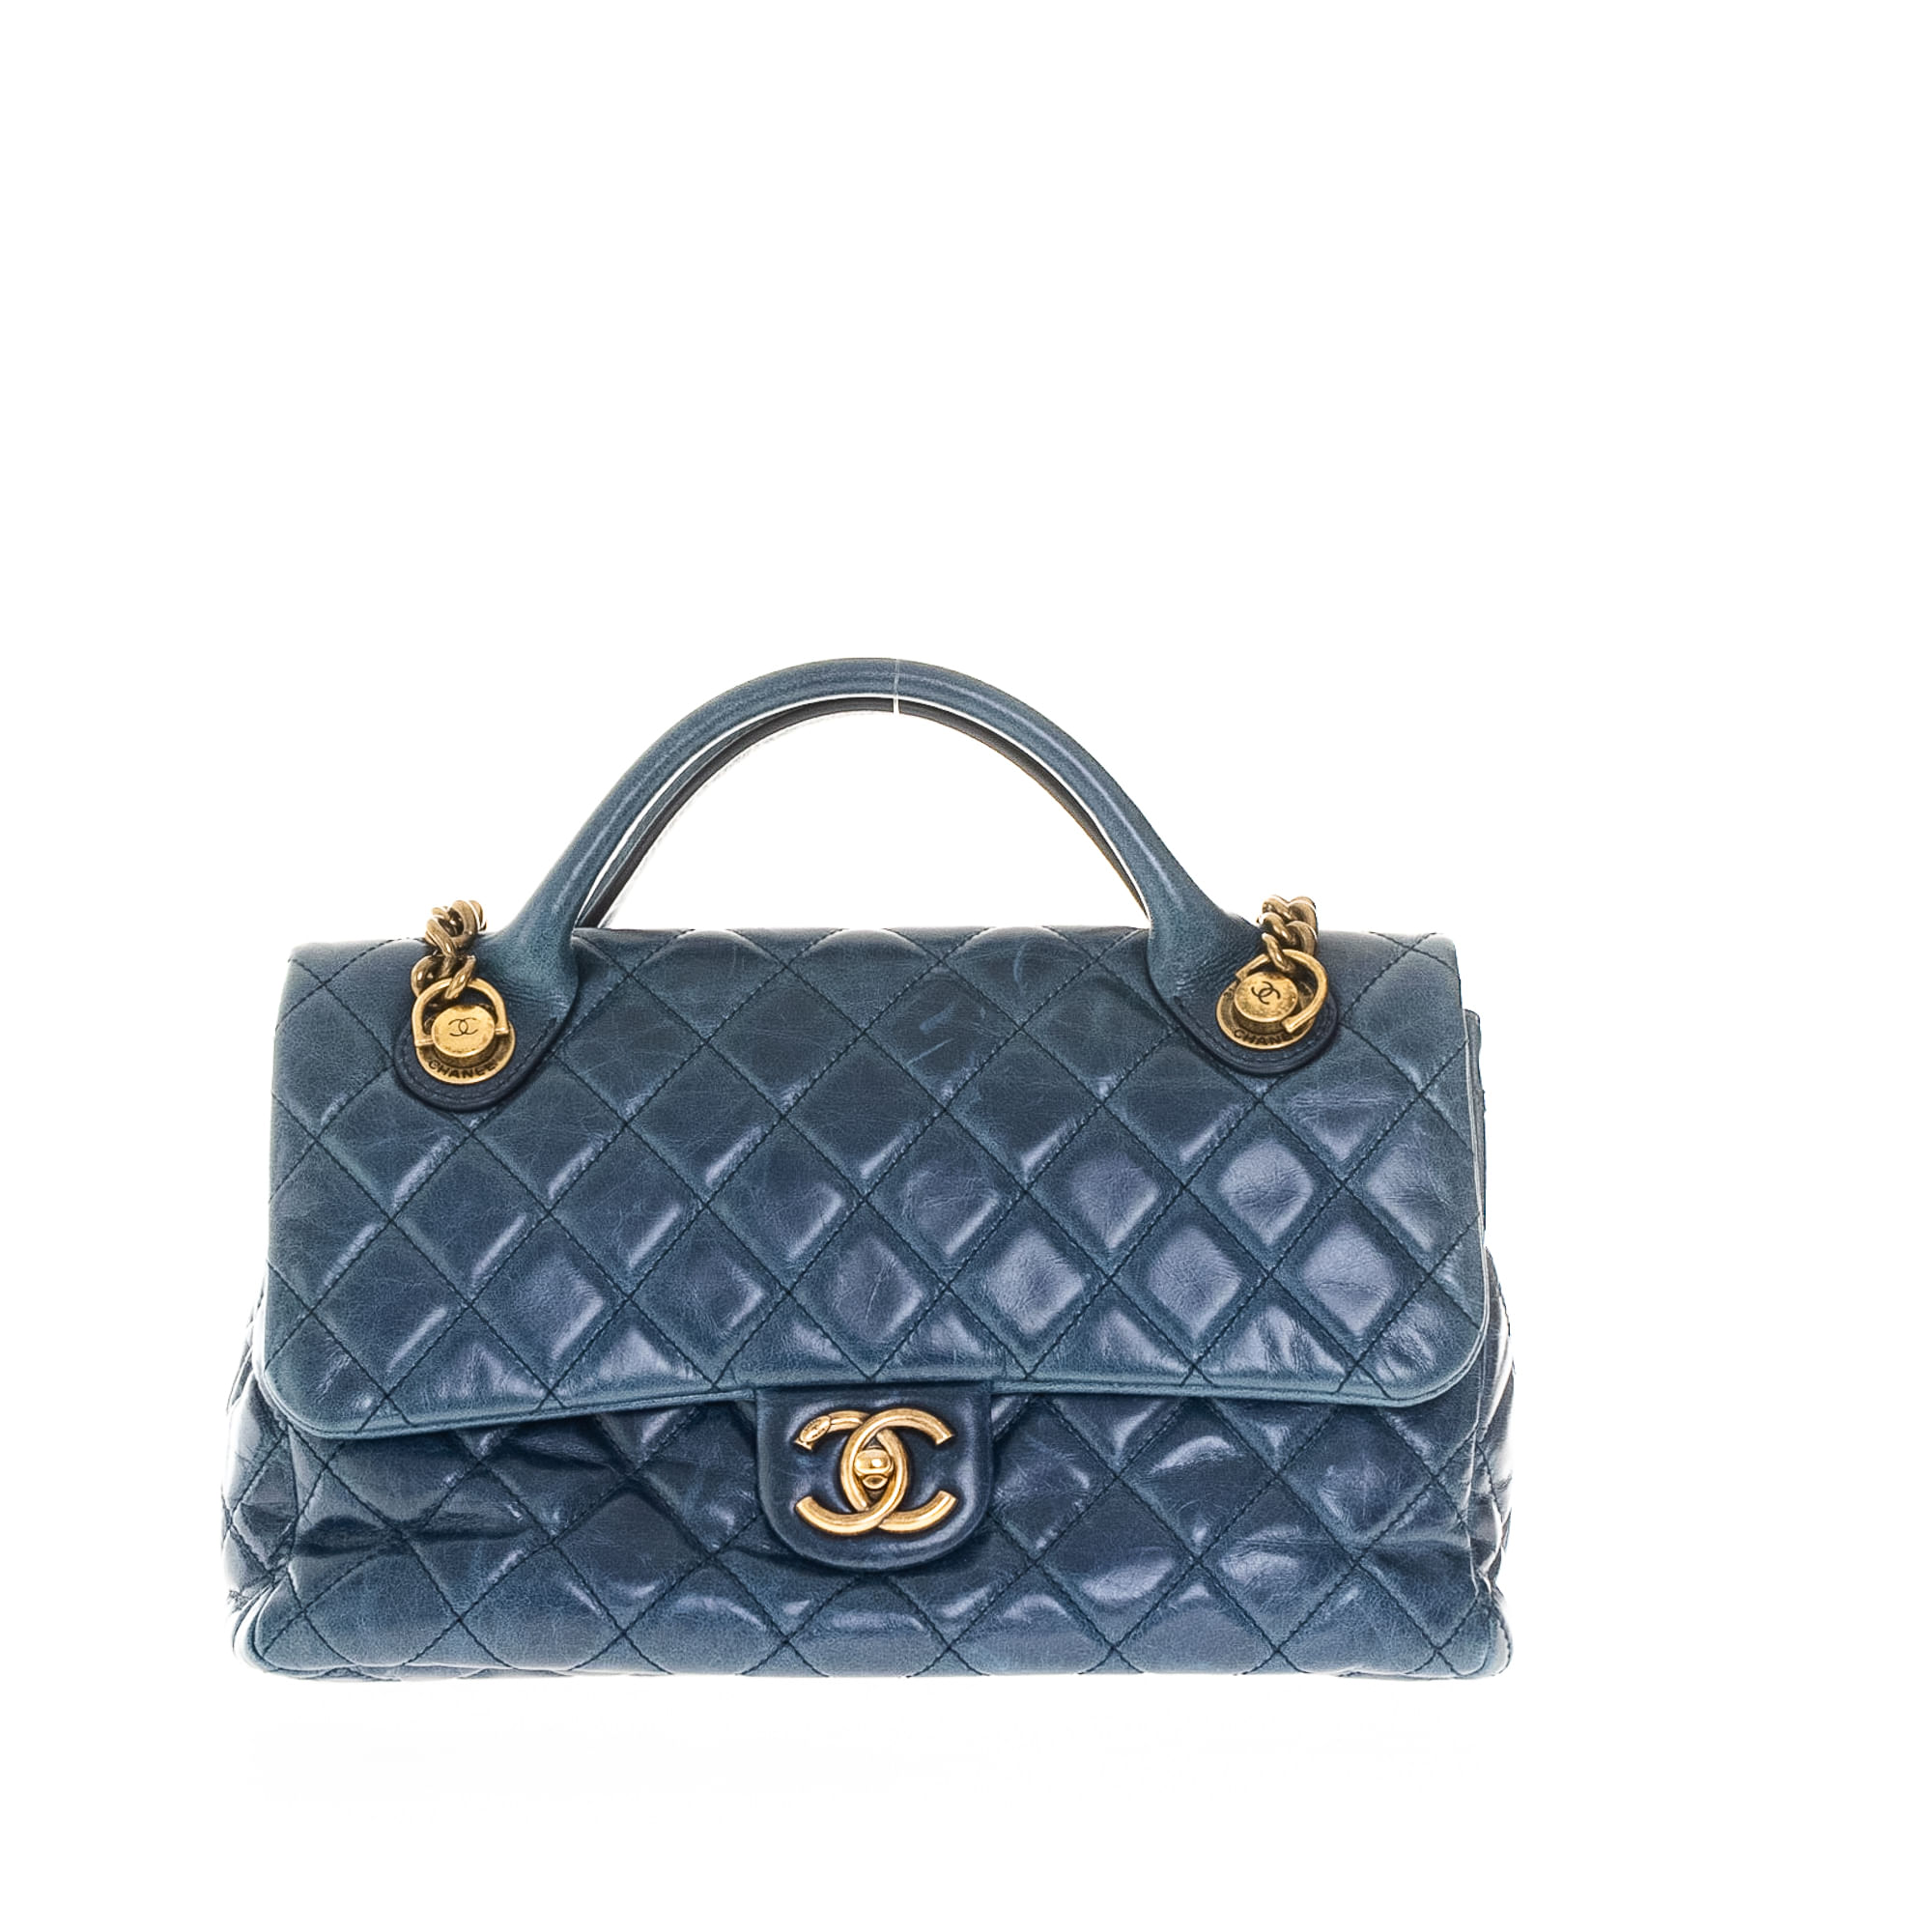 Bolsa Chanel Coco Couro Azul | Brechó de luxo - Prettynew